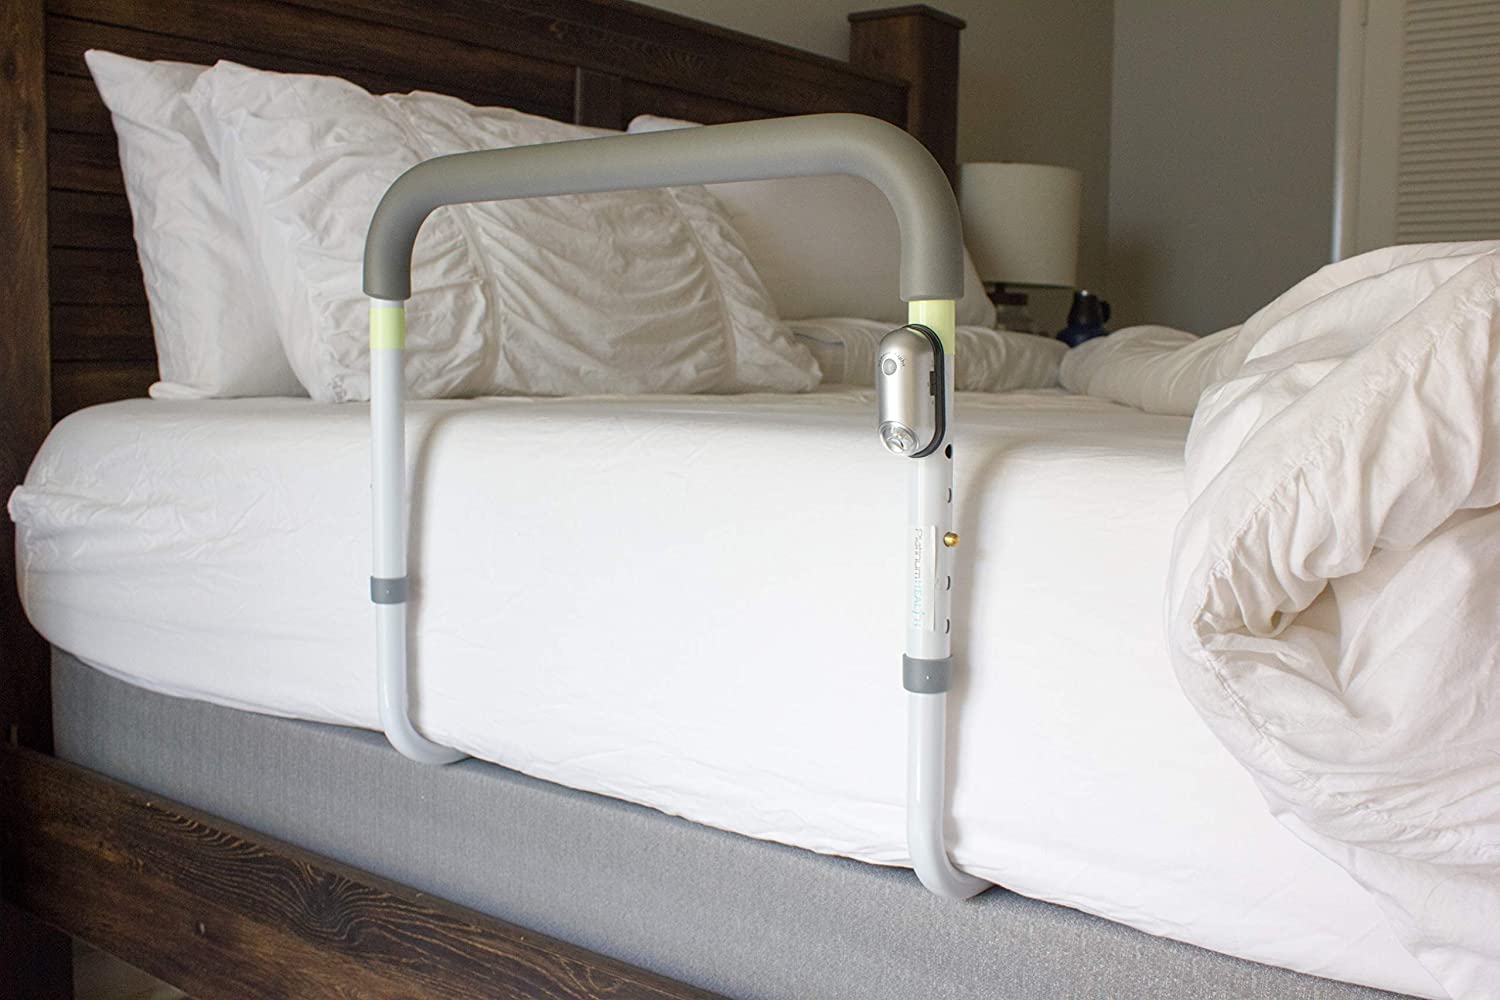 landauer medstar bed rails for adults